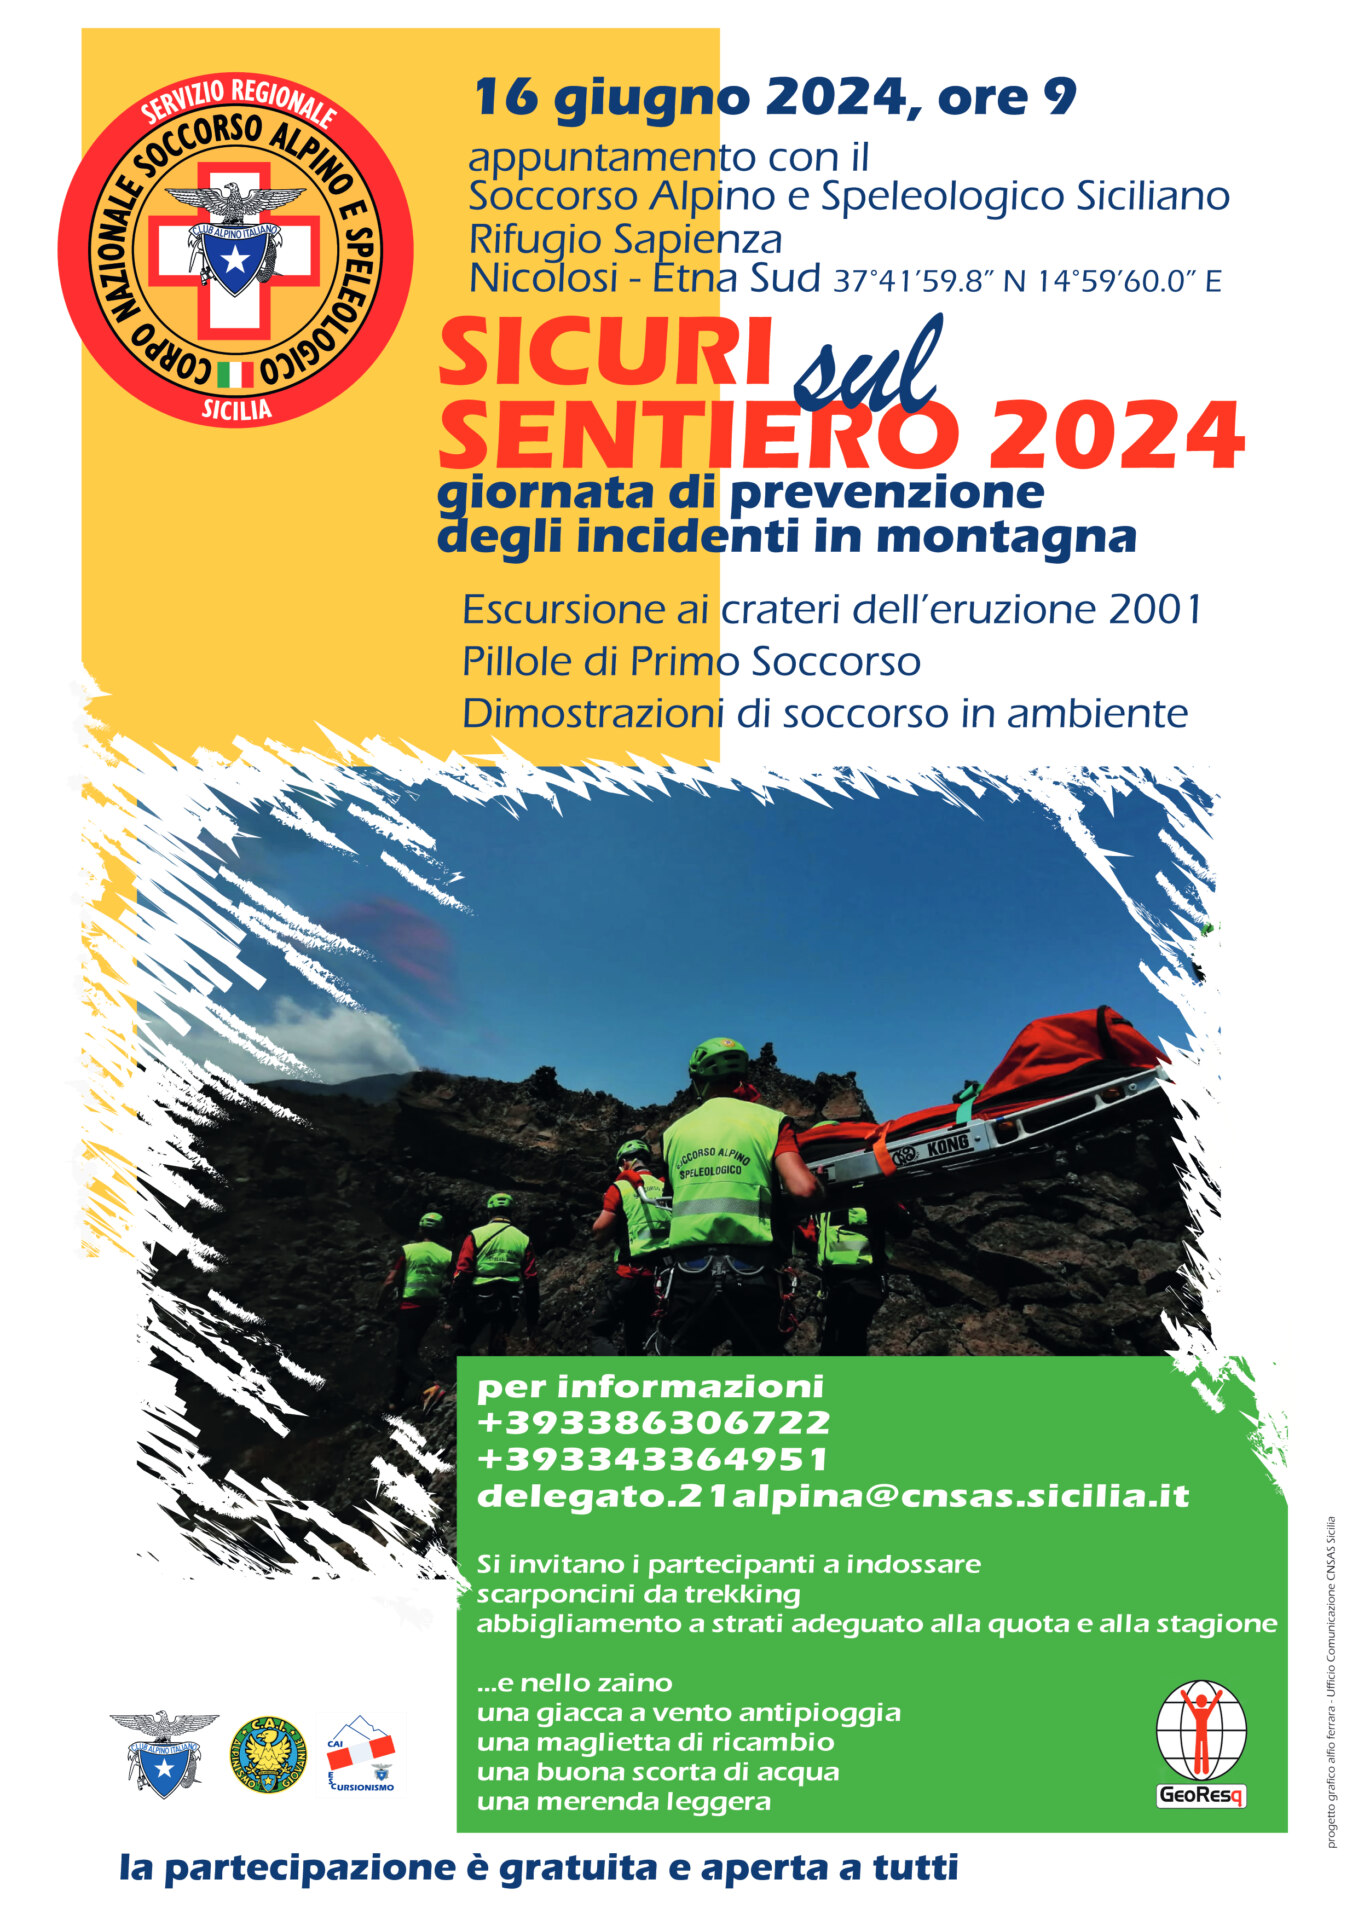 “Sicuri sul sentiero 2024”, a Catania “Giornata nazionale di sensibilizzazione sulla sicurezza in montagna”